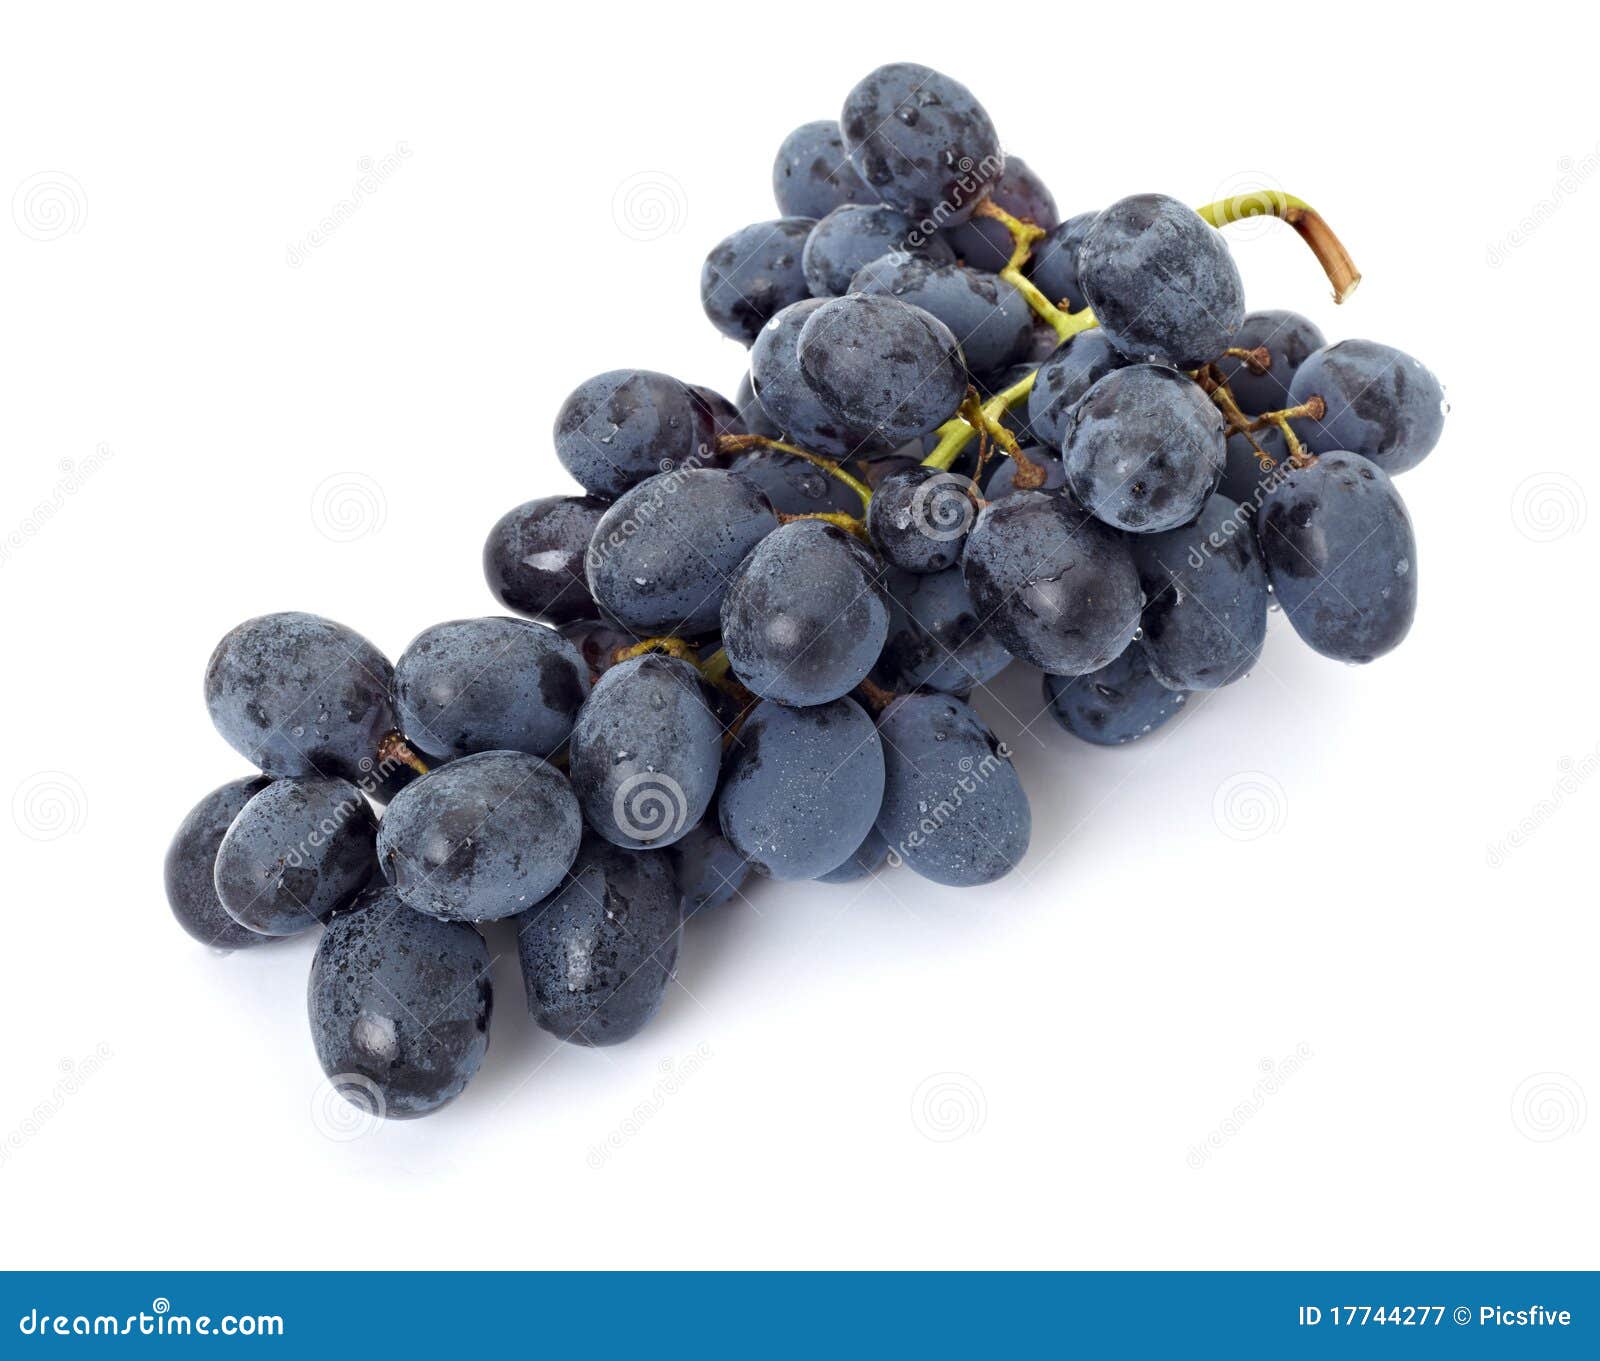 grape berry